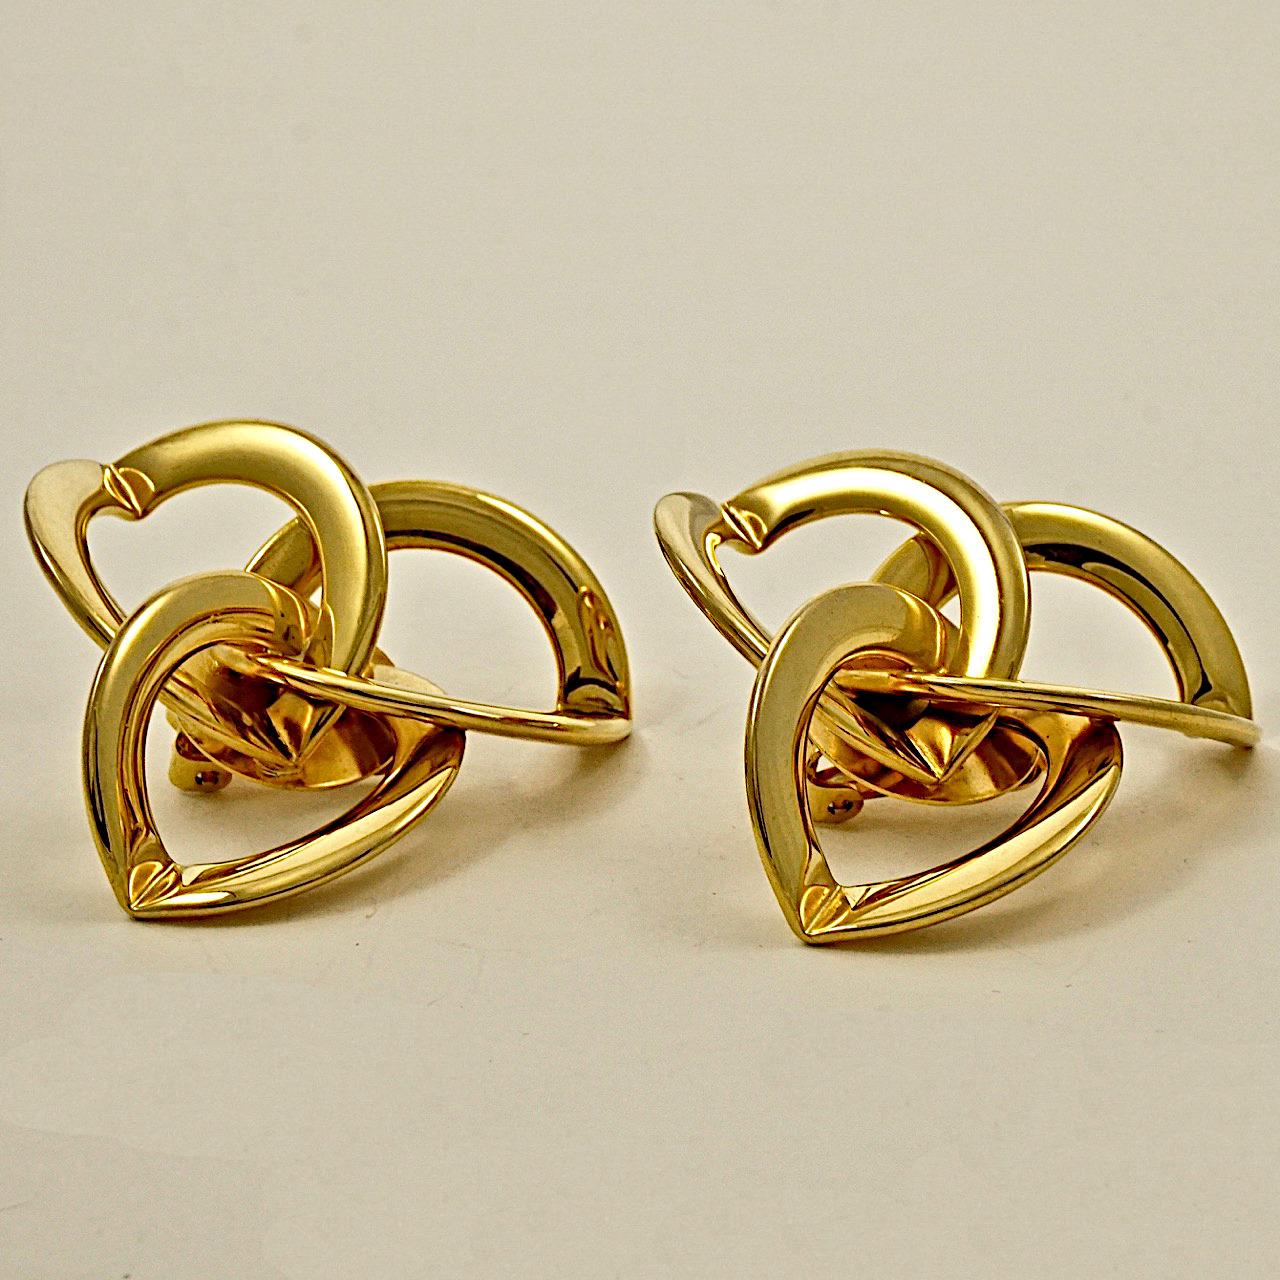 Vergoldete Clip-Ohrringe mit sich kreuzenden dreifachen Ringen. Messdurchmesser 4,8 cm / 1,88 Zoll. Die Ohrringe sind in sehr gutem Zustand.

Dies ist ein Paar stilvolle Vintage-Ohrringe aus den 1980er Jahren.